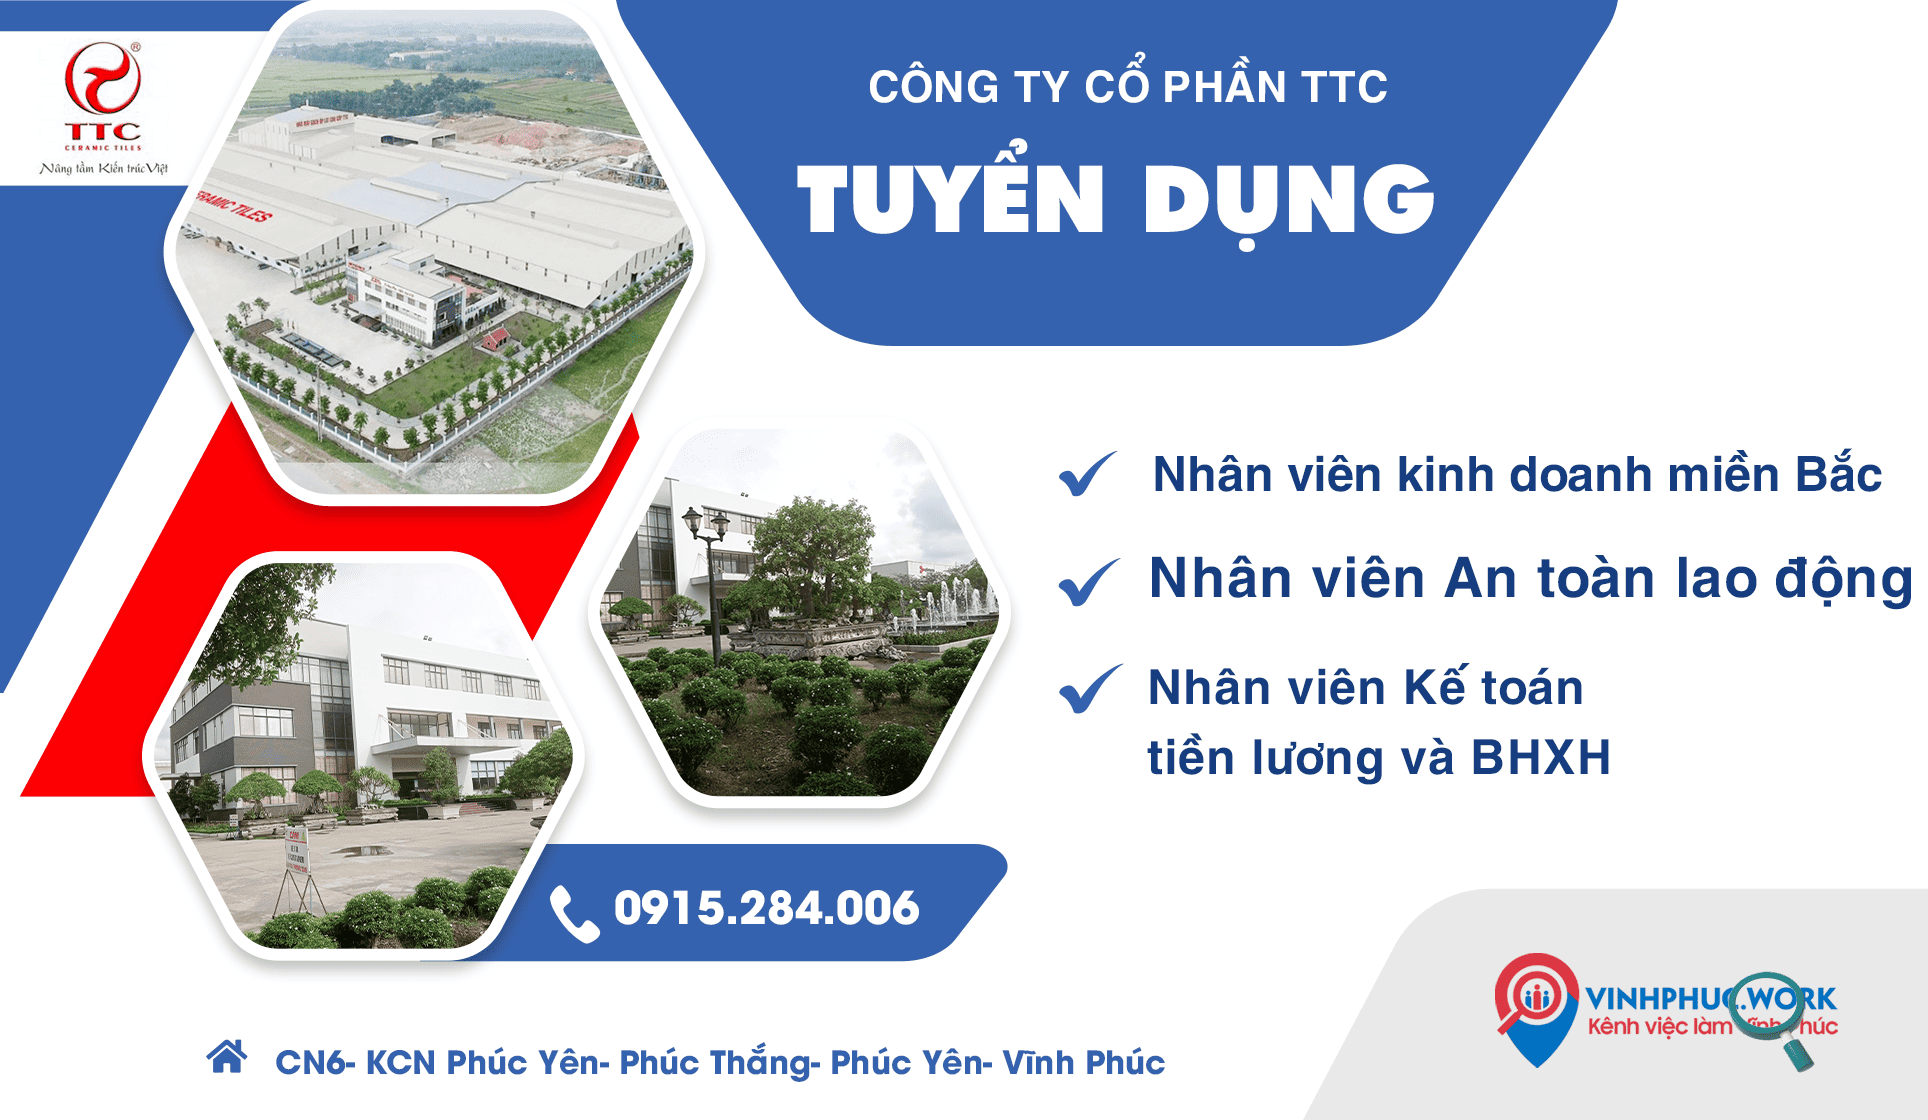 Cong Ty Co Phan Ttc Thong Bao Tuyen Dung Cac Vi Tri Moi Ke Toan Tien Luong Bhxh Nhan Vien An Toan Lao Dong Nhan Vien Kinh Doanh 2